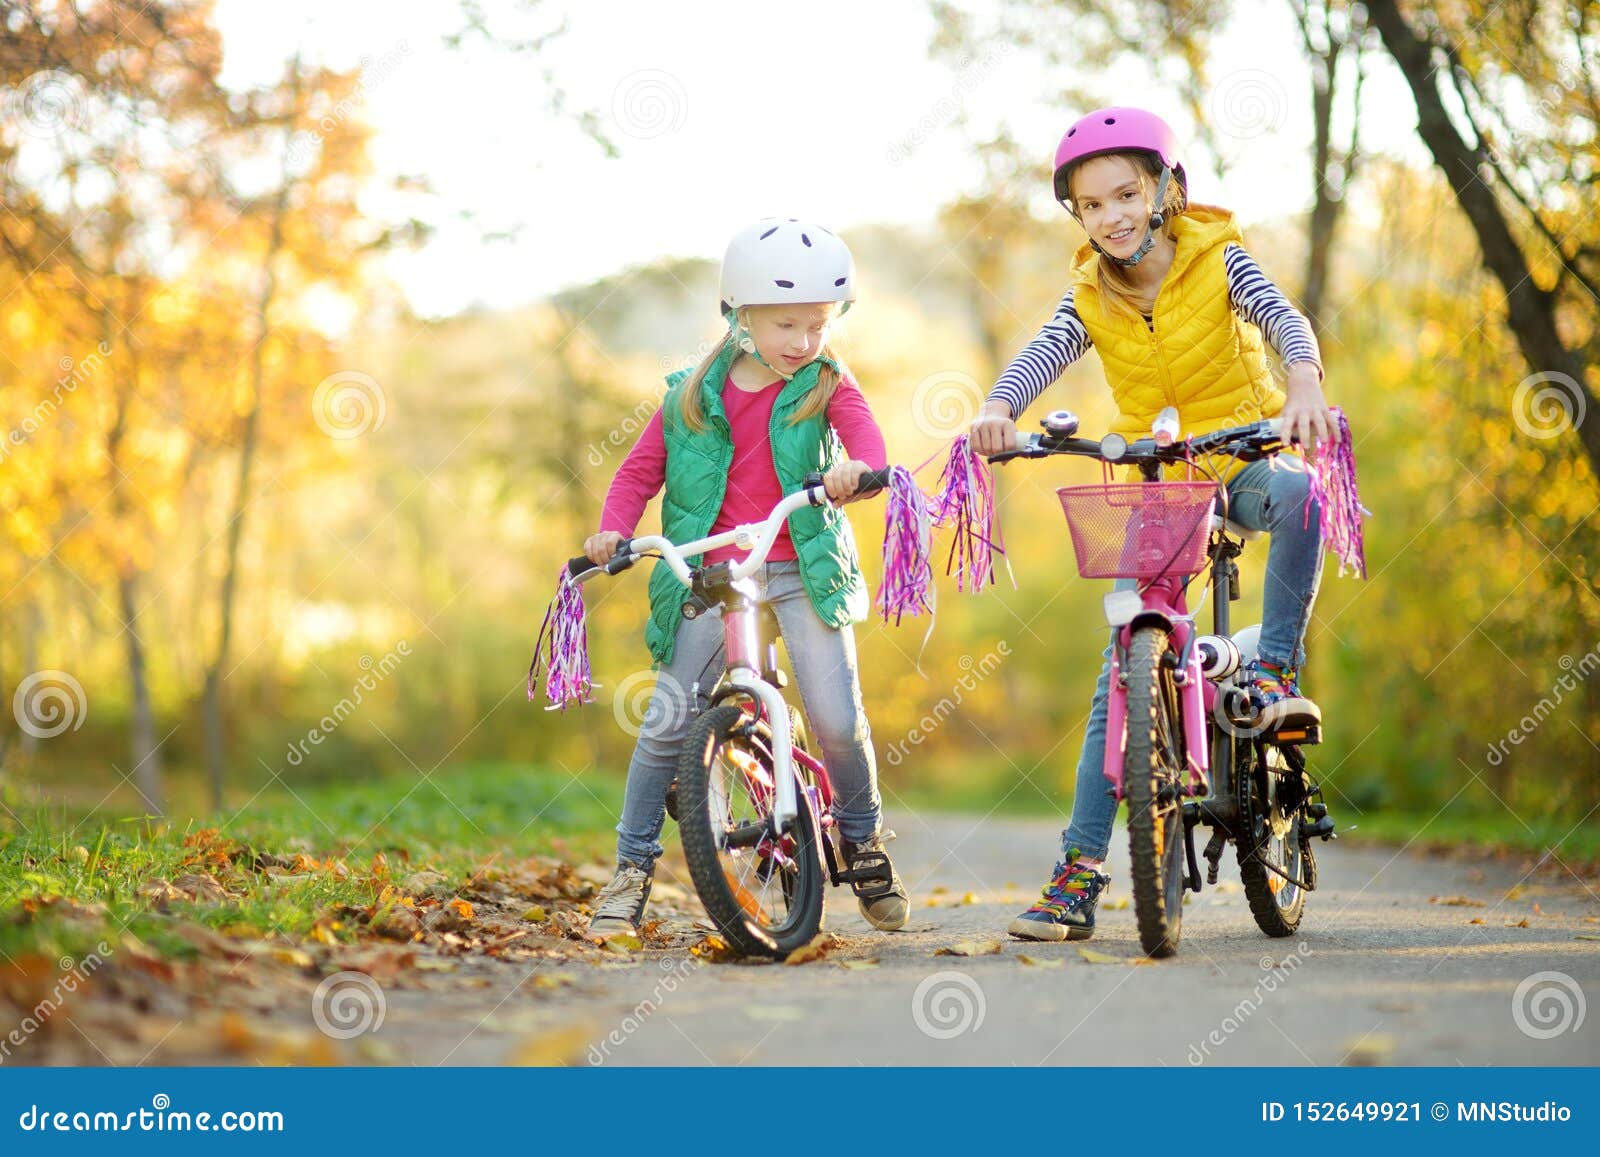 骑自行车的逗人喜爱的妹在城市公园在晴朗的秋天天 r 头戴安全帽的孩子，当骑自行车时